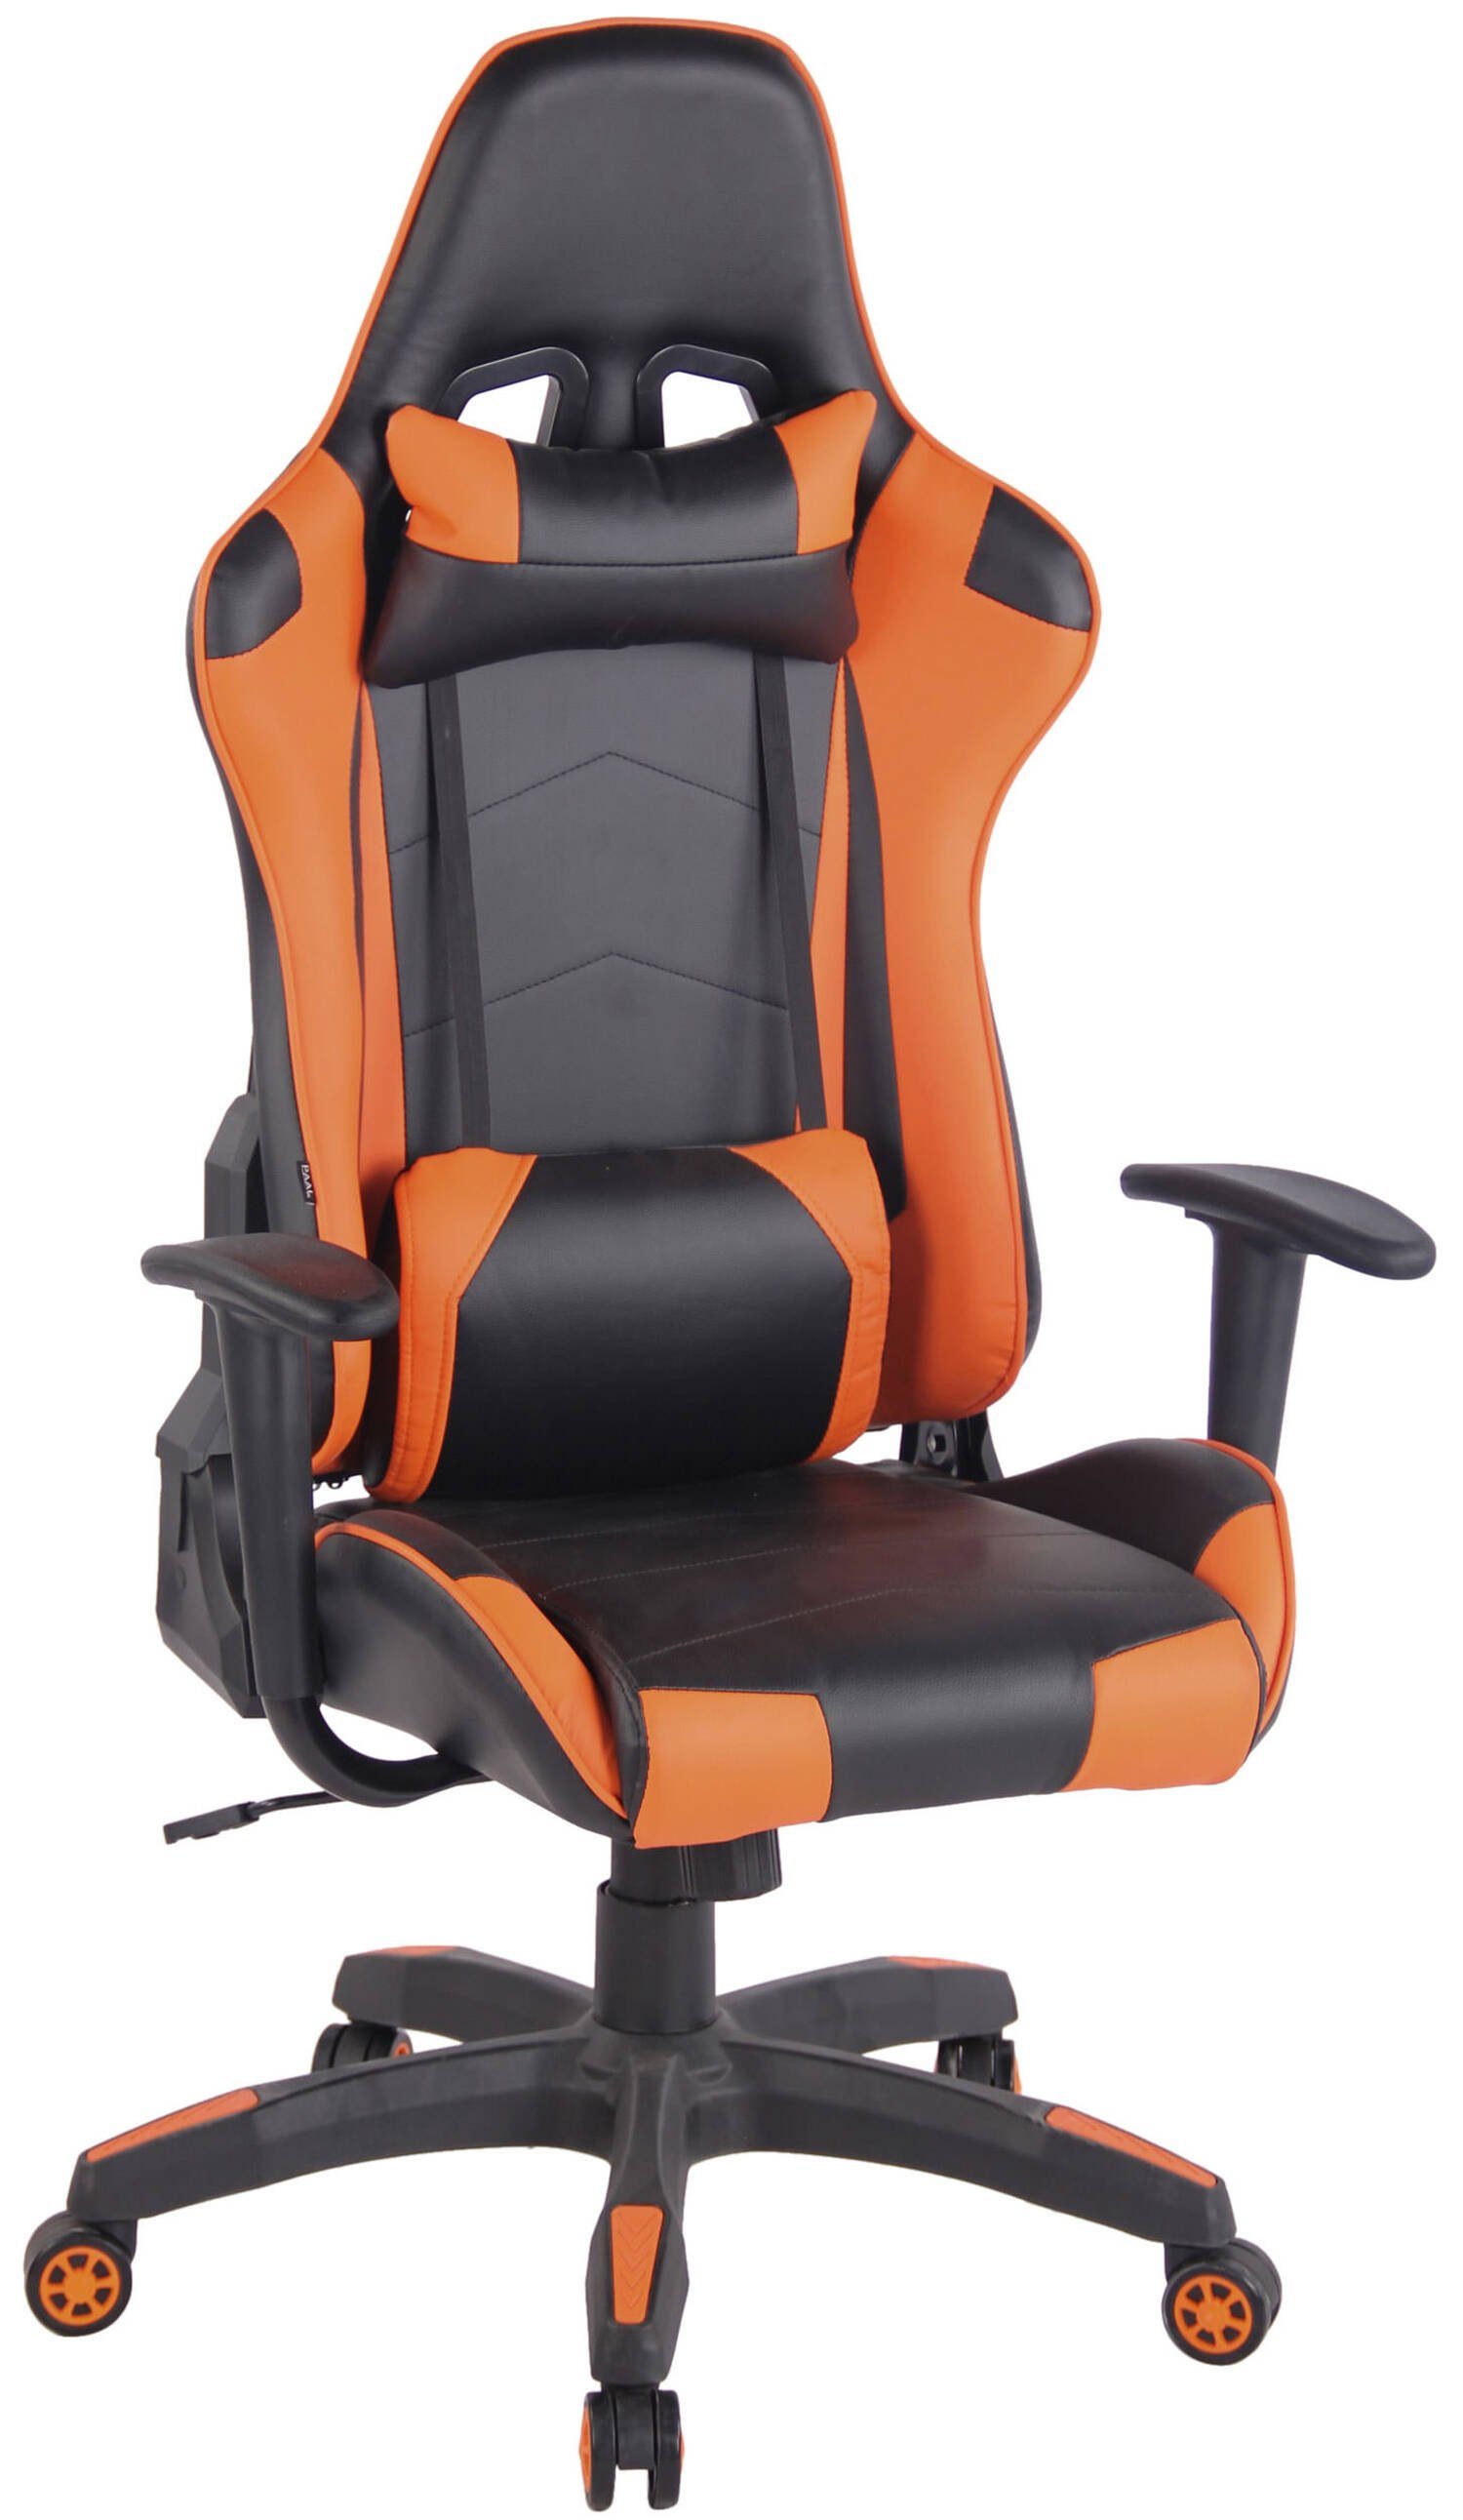 Racingstuhl, 360° mit schwarz Gaming-Stuhl (Schreibtischstuhl, Chefsessel), TPFLiving - und Kunststoff höhenverstellbar drehbar Gestell: - Sitzfläche: bequemer schwarz/orange Mirage Gamingstuhl, Rückenlehne Drehstuhl, Kunstleder